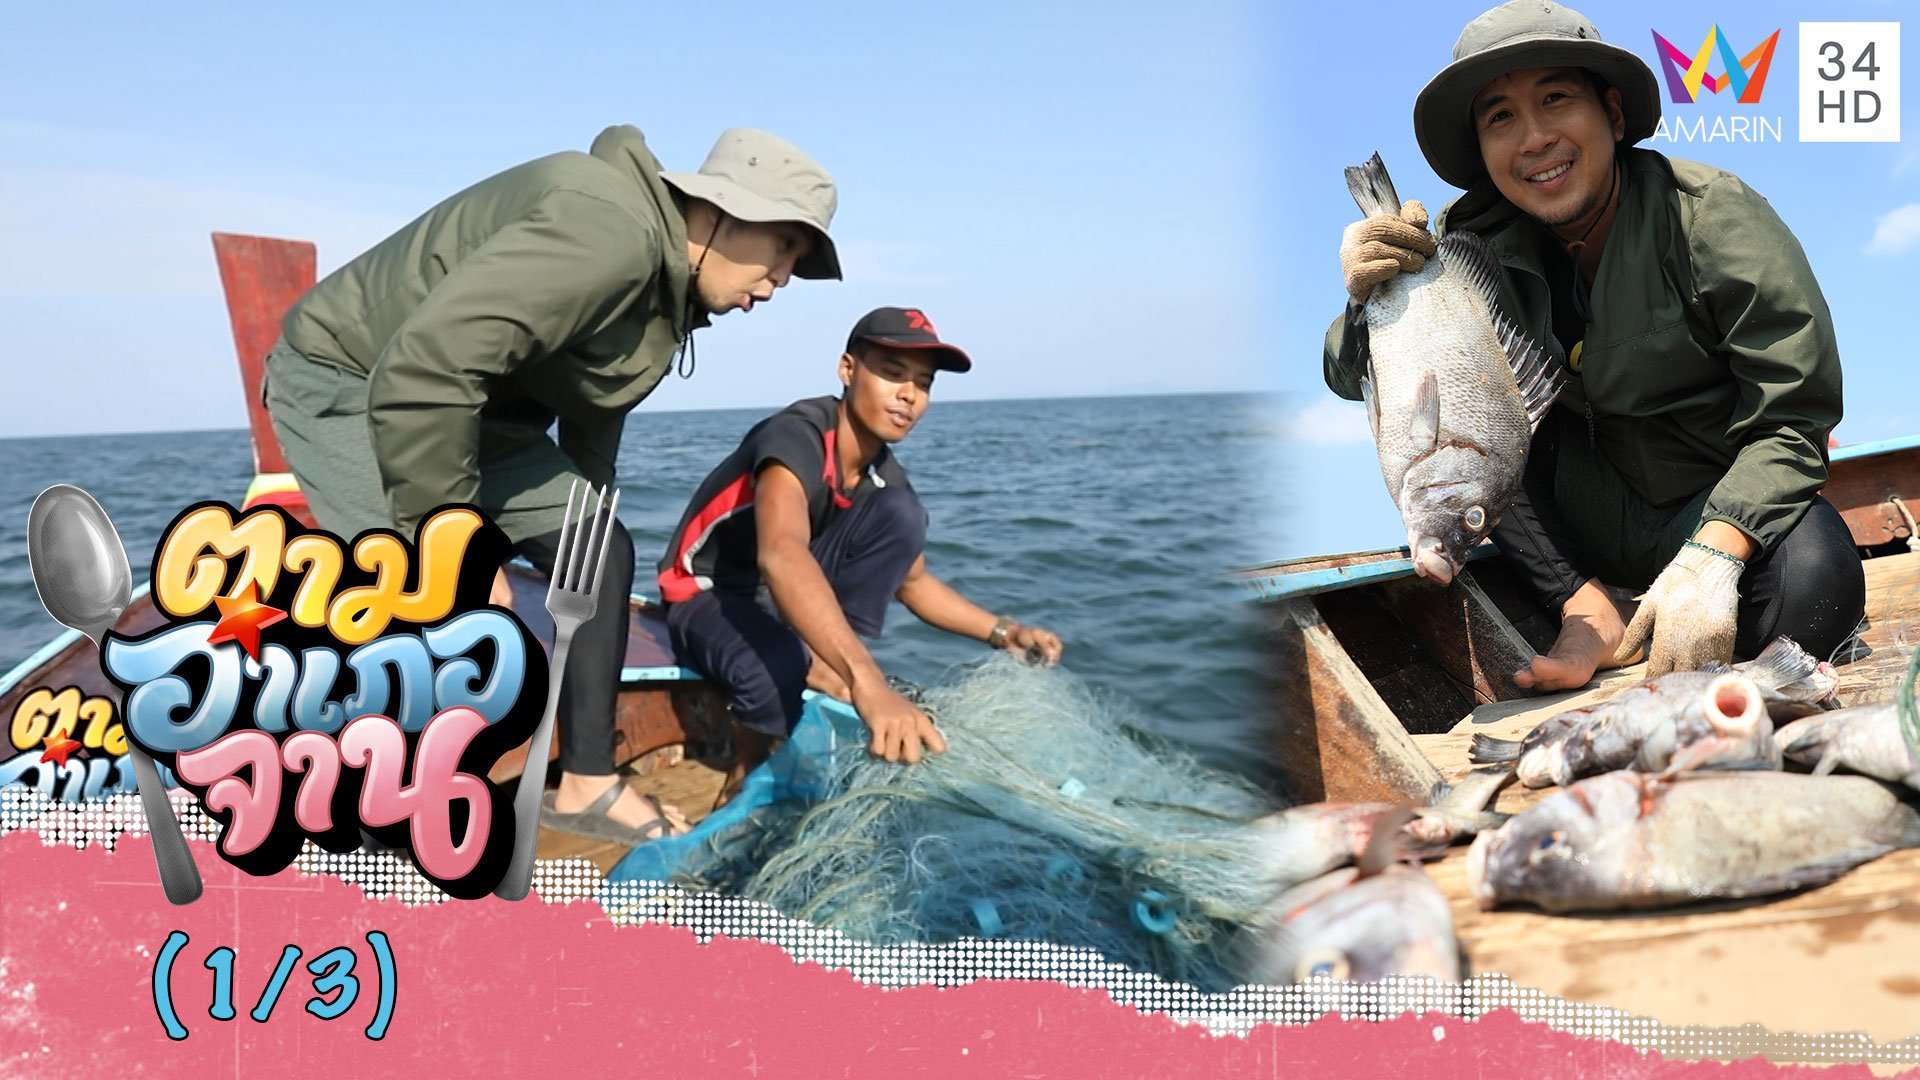 ออกเรือวางอวนดักปลาปากเม่น จ.ระนอง | ตามอำเภอจาน | 25 ก.ค. 63 (1/3) | AMARIN TVHD34